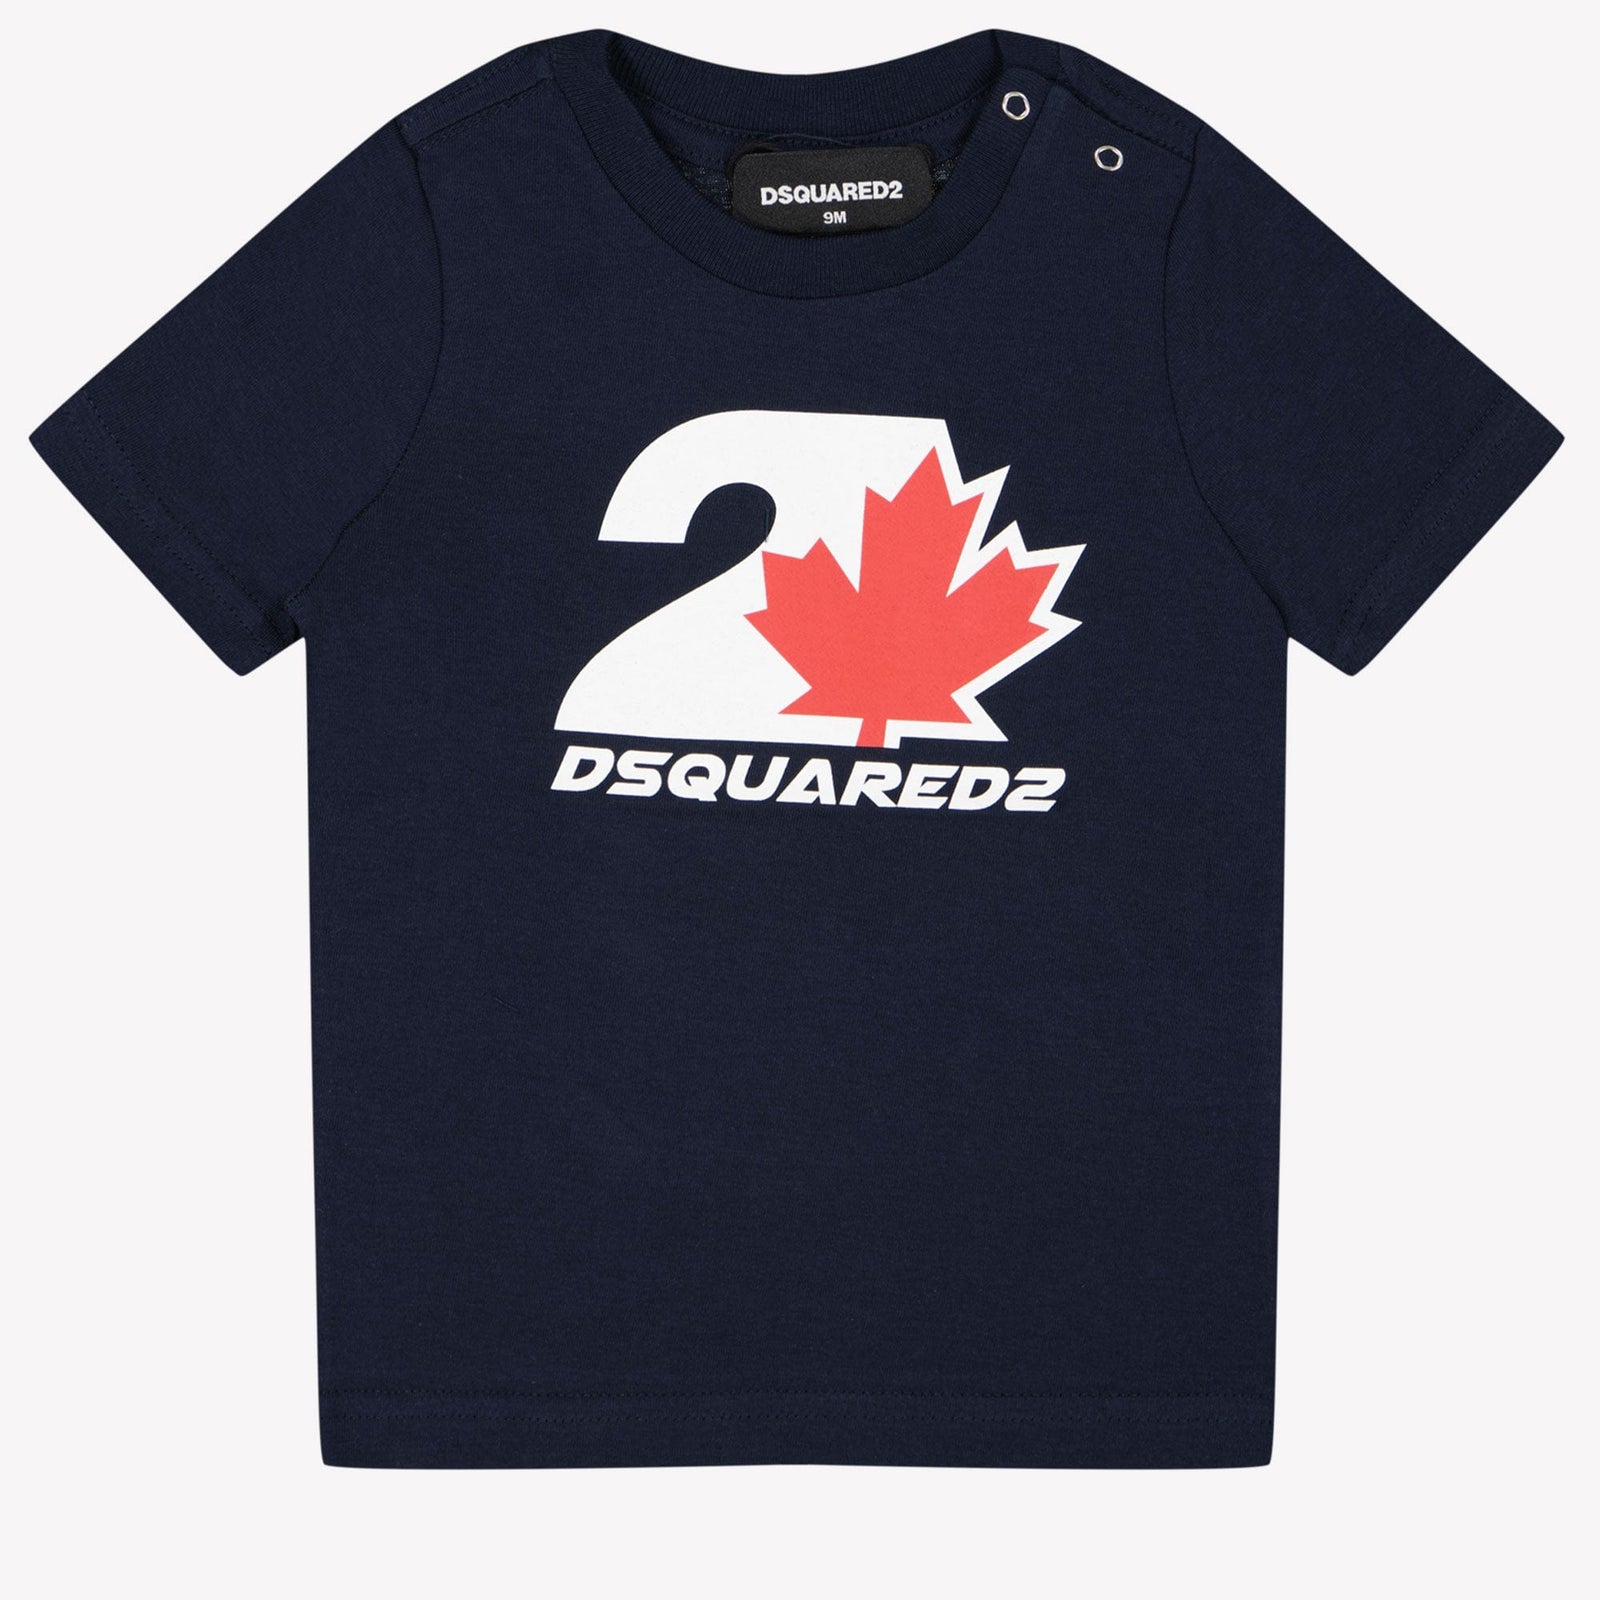 Dsquared2 Baby Jongens T-shirt Navy 3 mnd